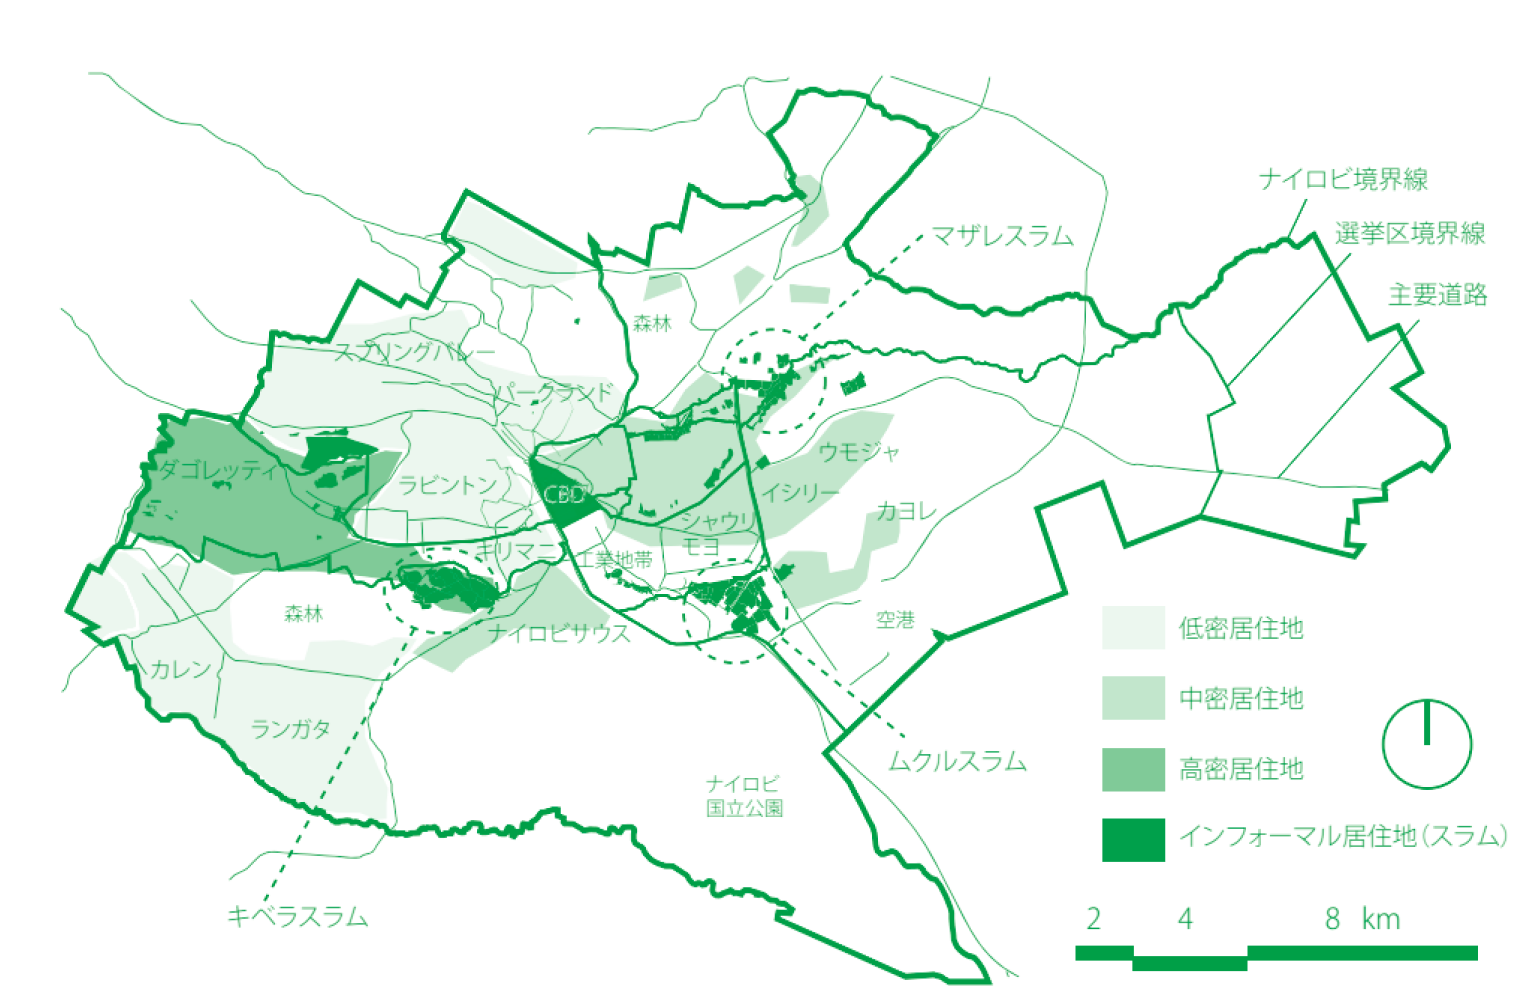 インフォーマル居住地の分布